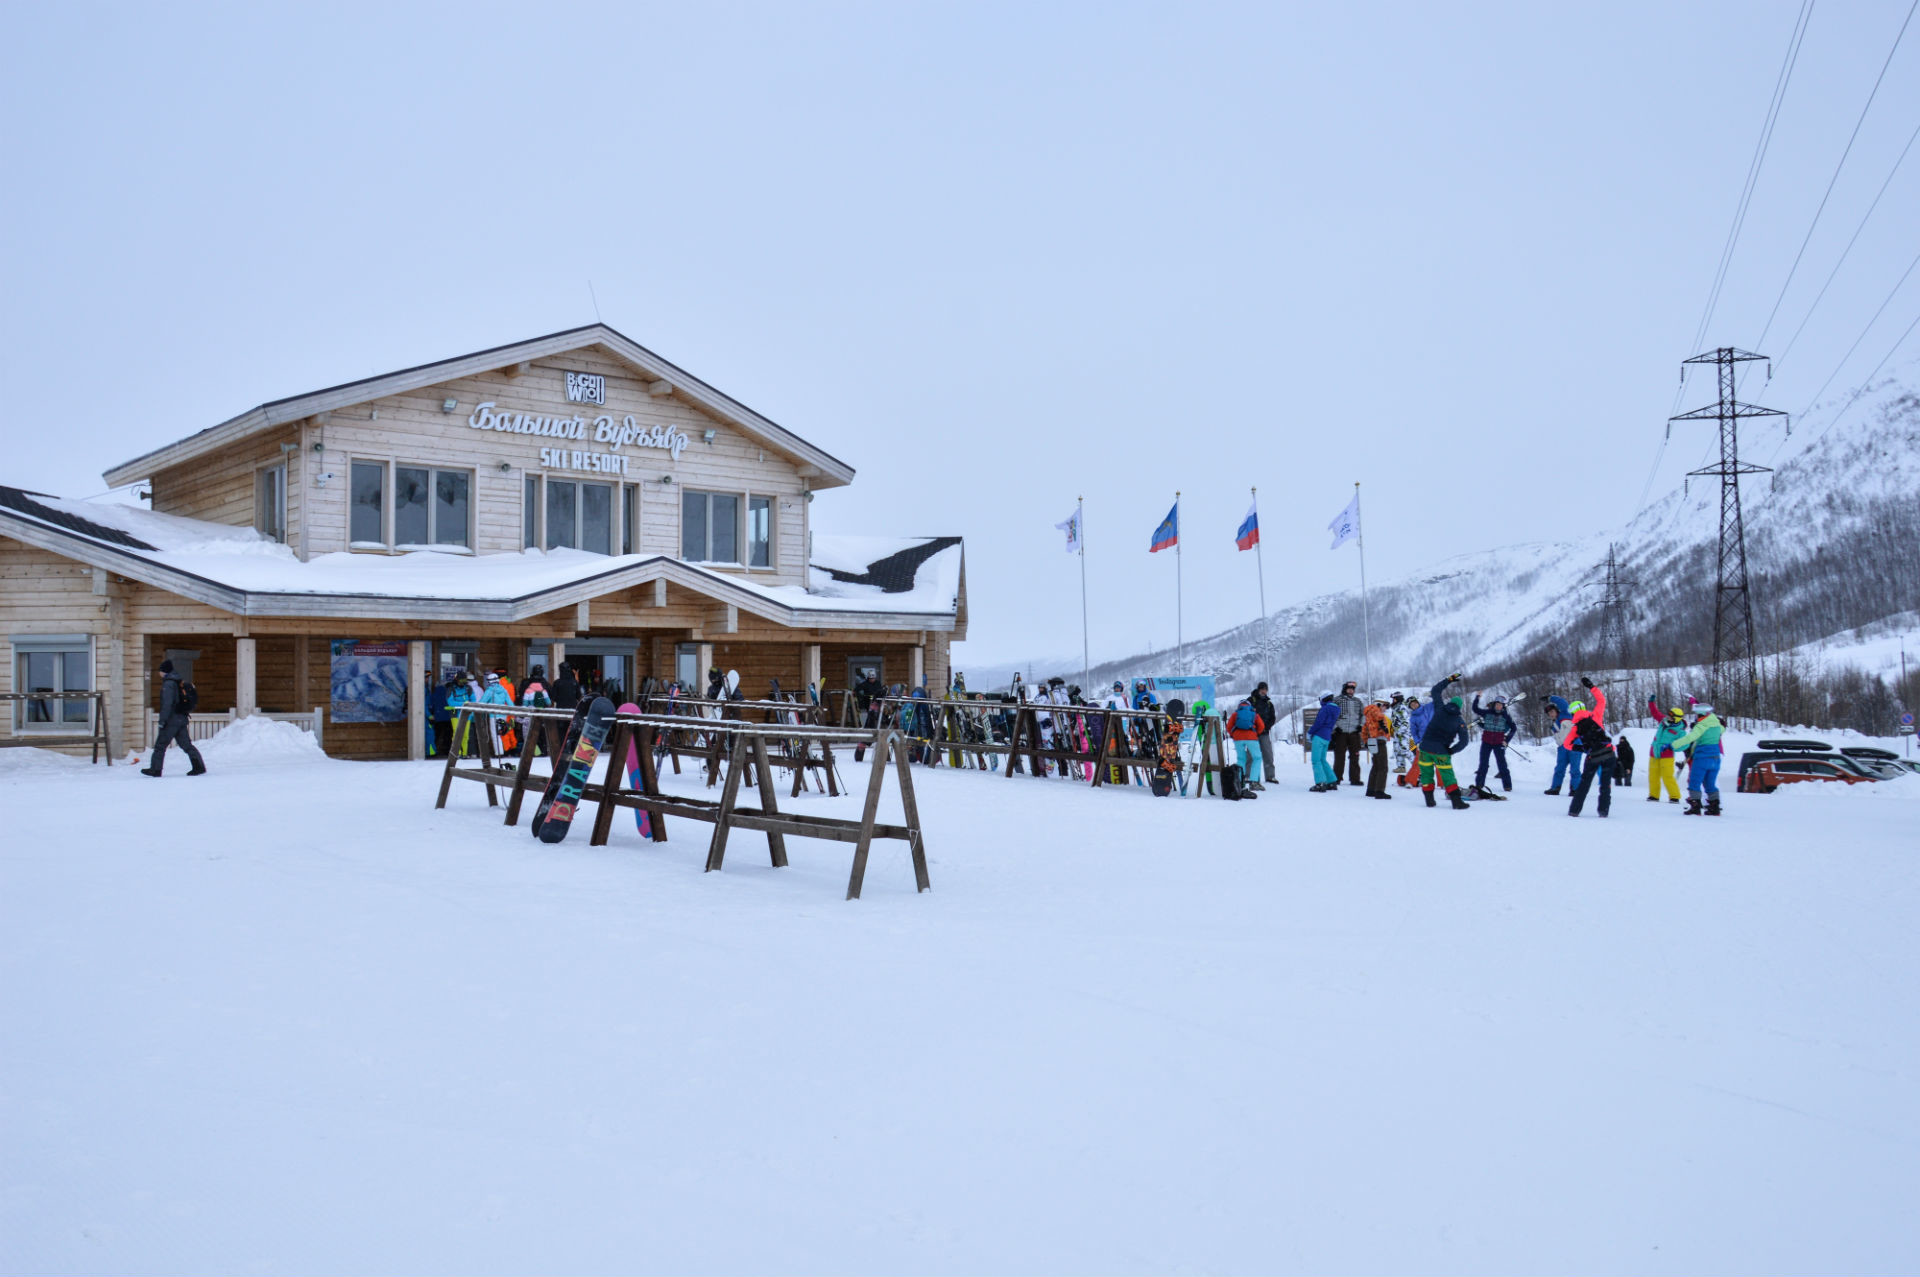 Sciatori e snowboarder affollano questo nuovo resort
